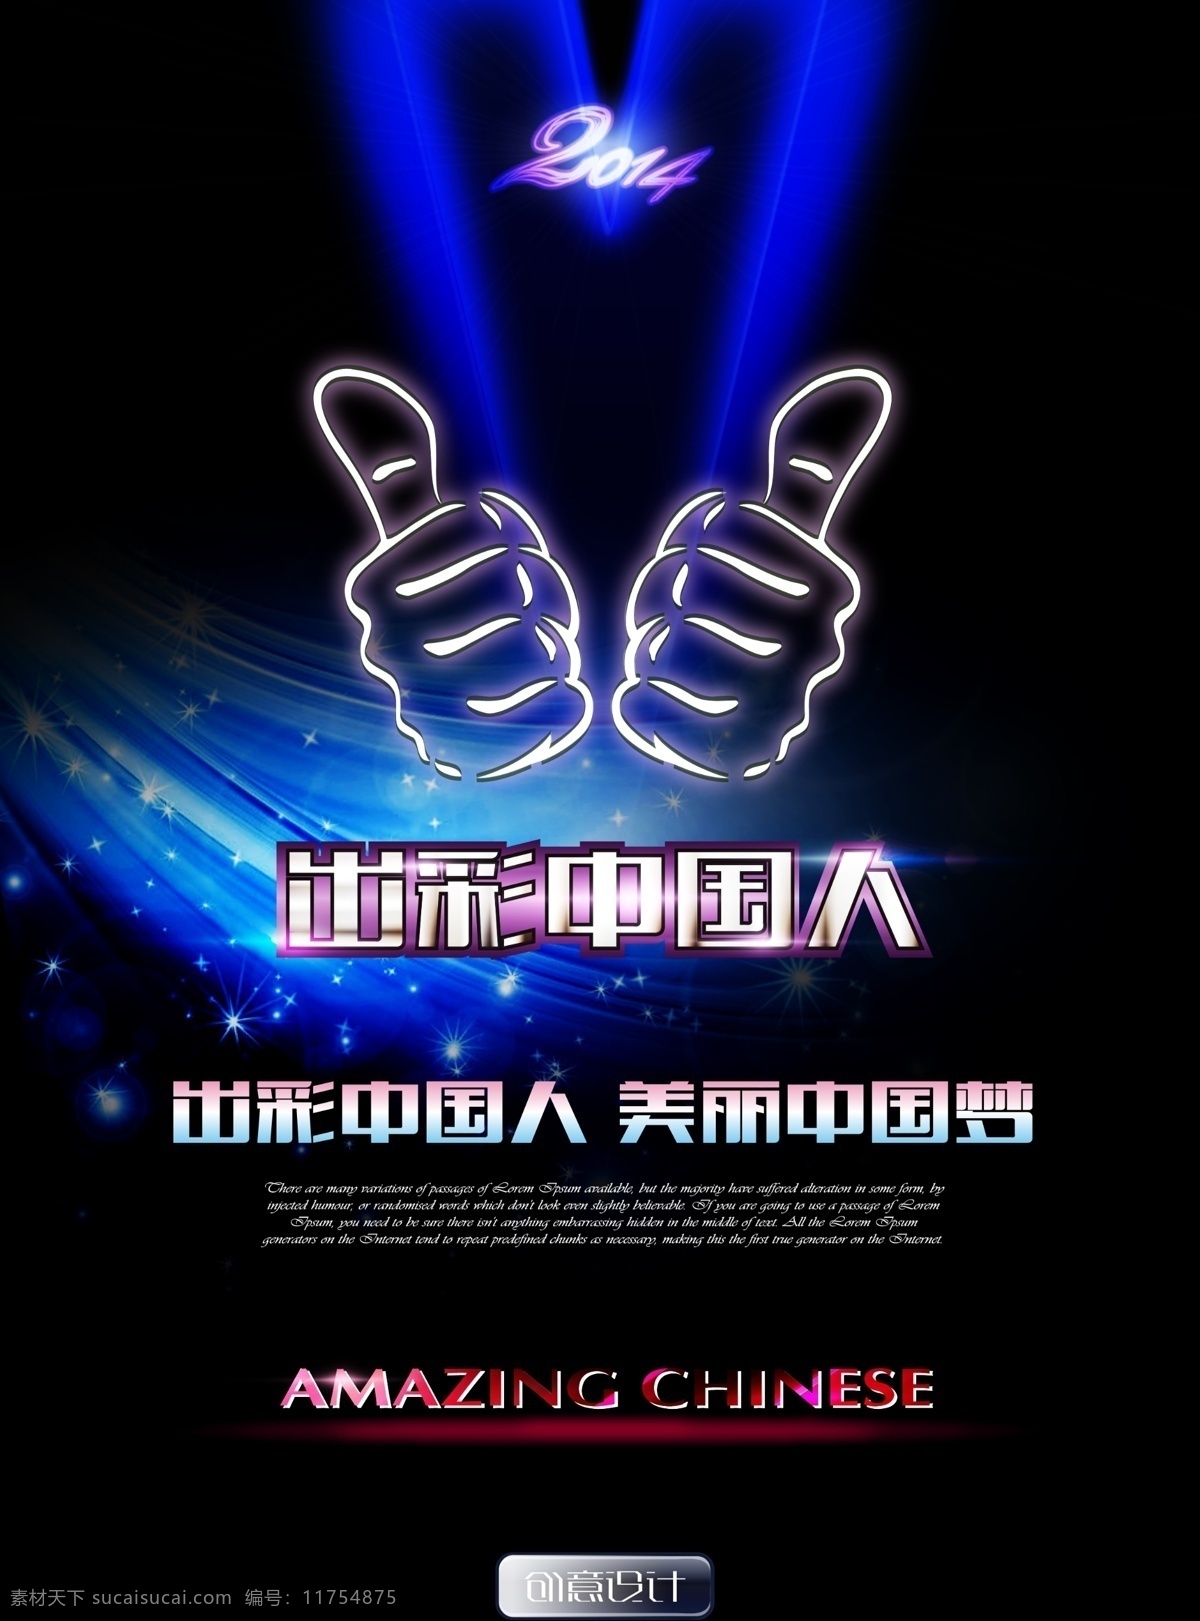 出彩中国人 中国梦 中国人 出彩 模板 中国梦模板 广告 美丽中国梦 2014 v字 胜利 大拇指 amazing chinese 广告设计模板 源文件